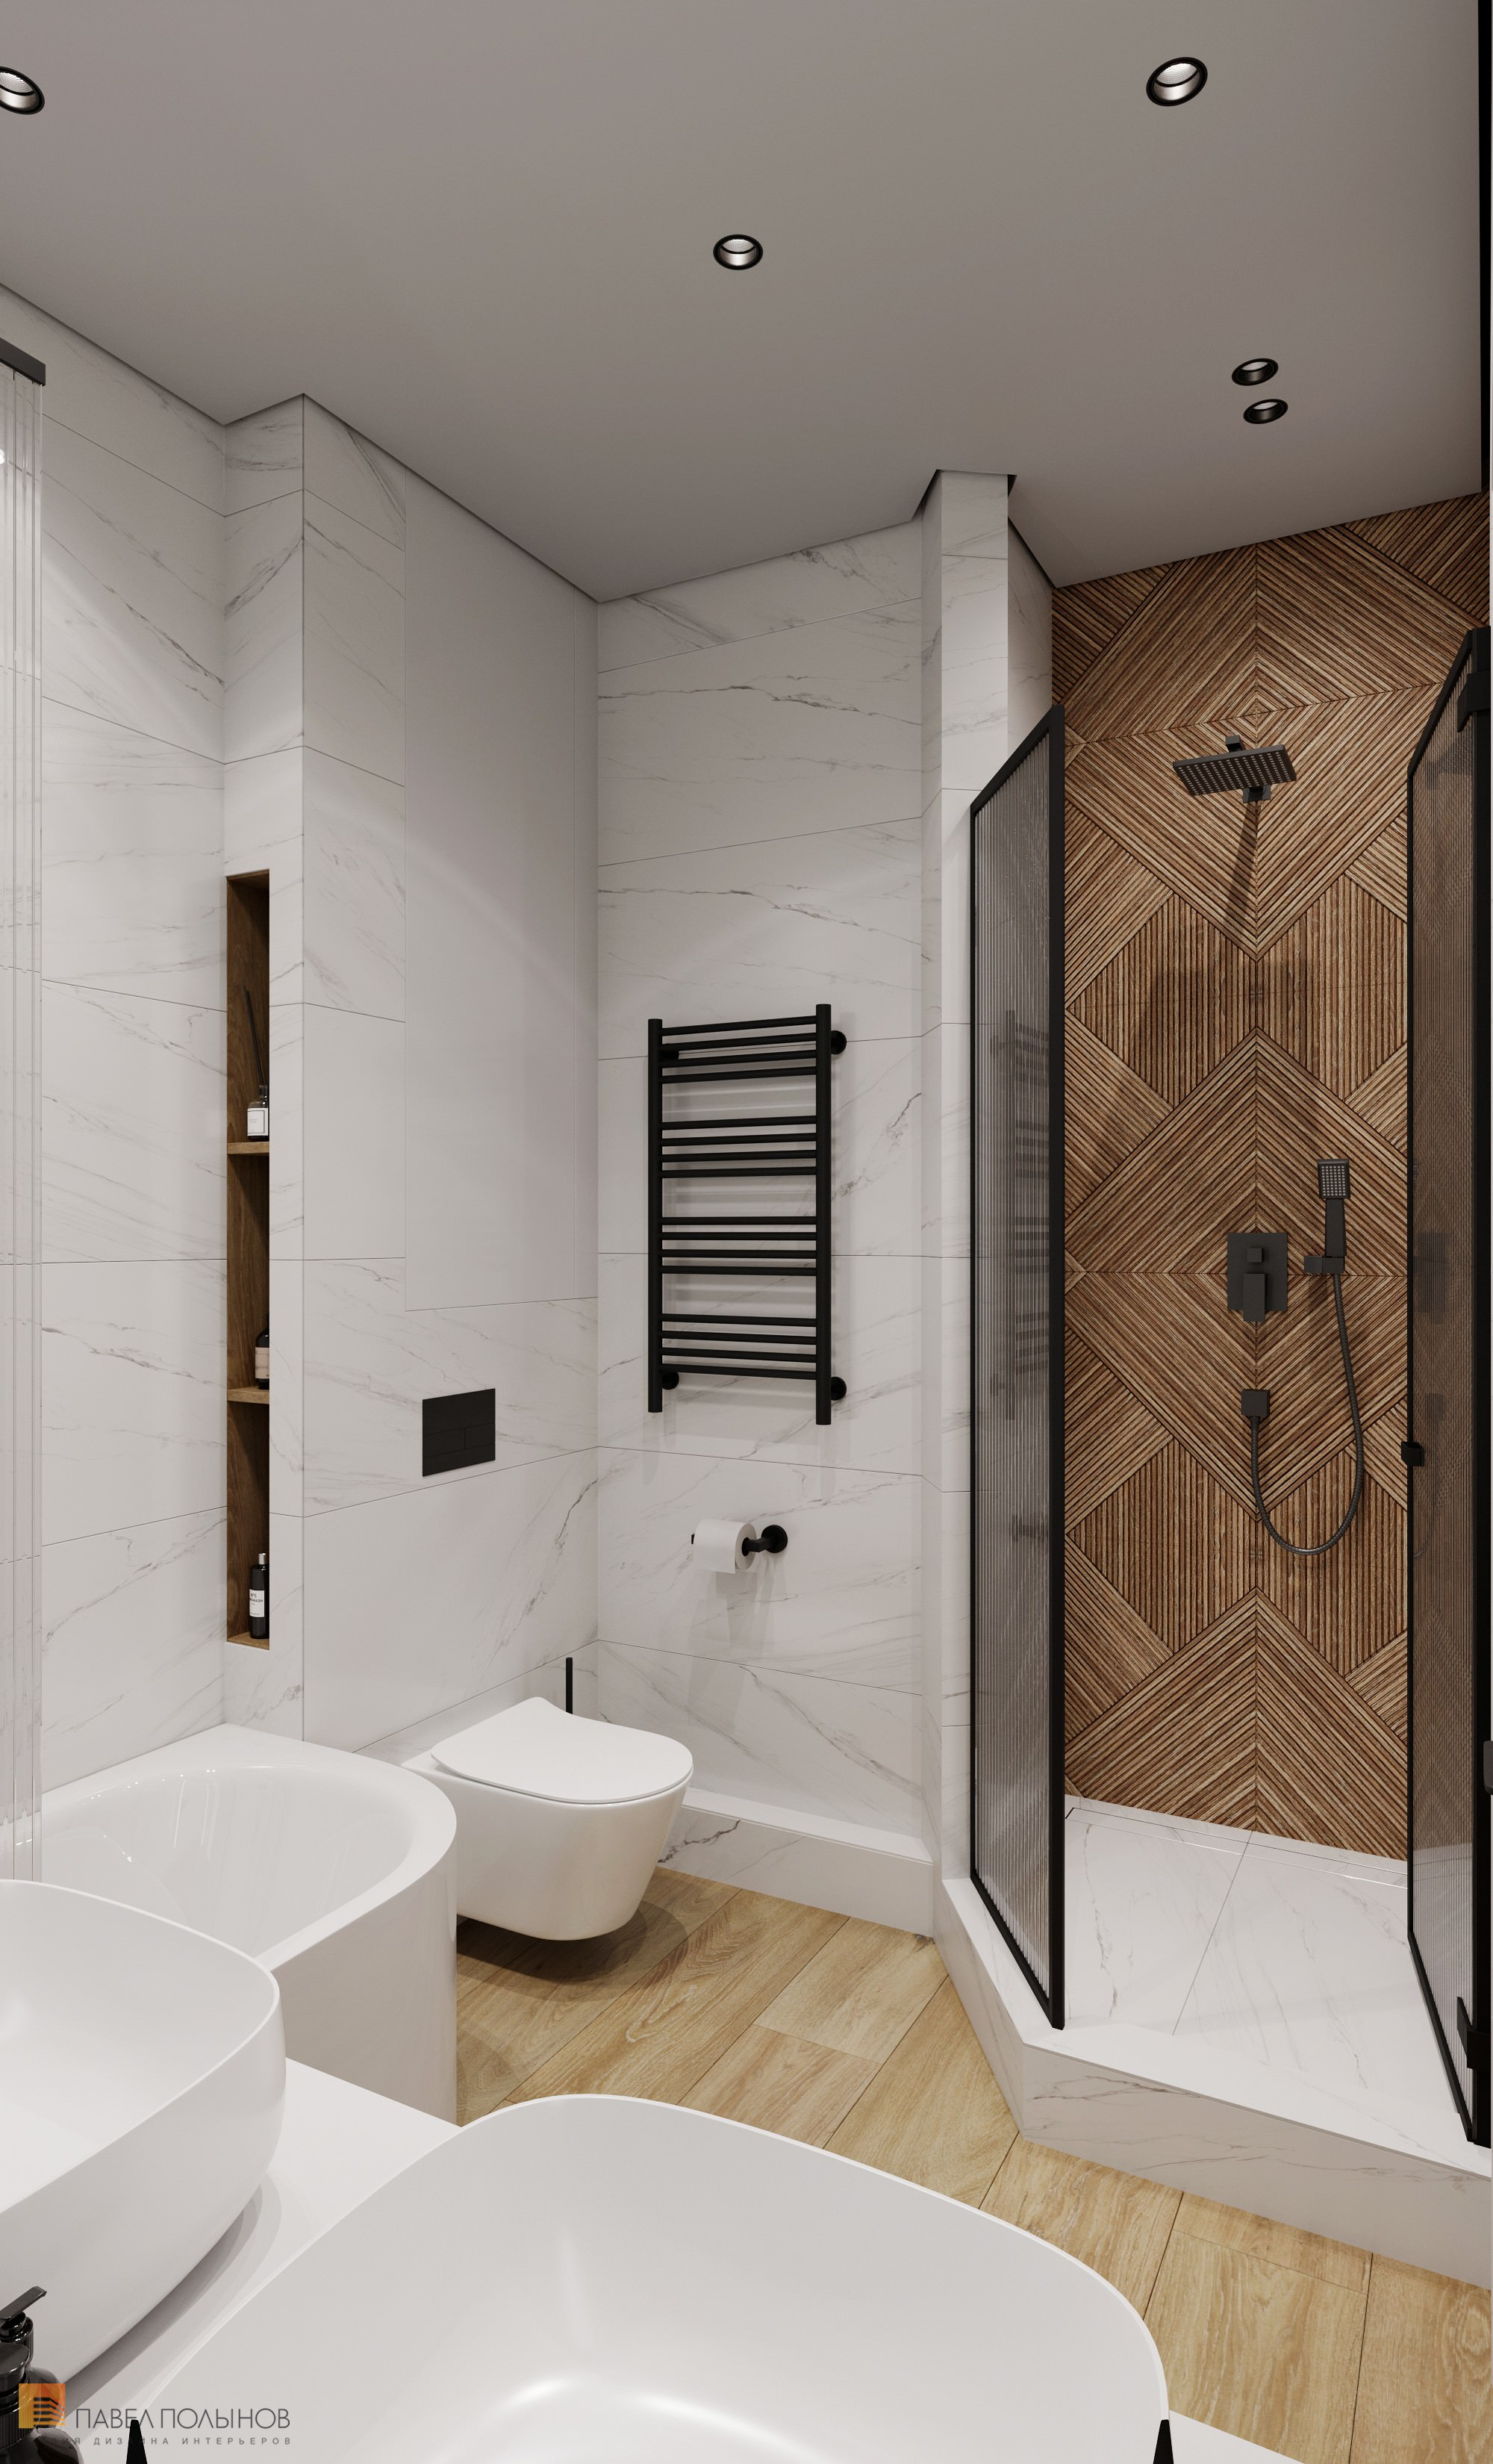 Фото дизайн ванной комнаты из проекта «Дизайн интерьера квартиры в современном стиле, ЖК «Сердце столицы», 98 кв.м.»